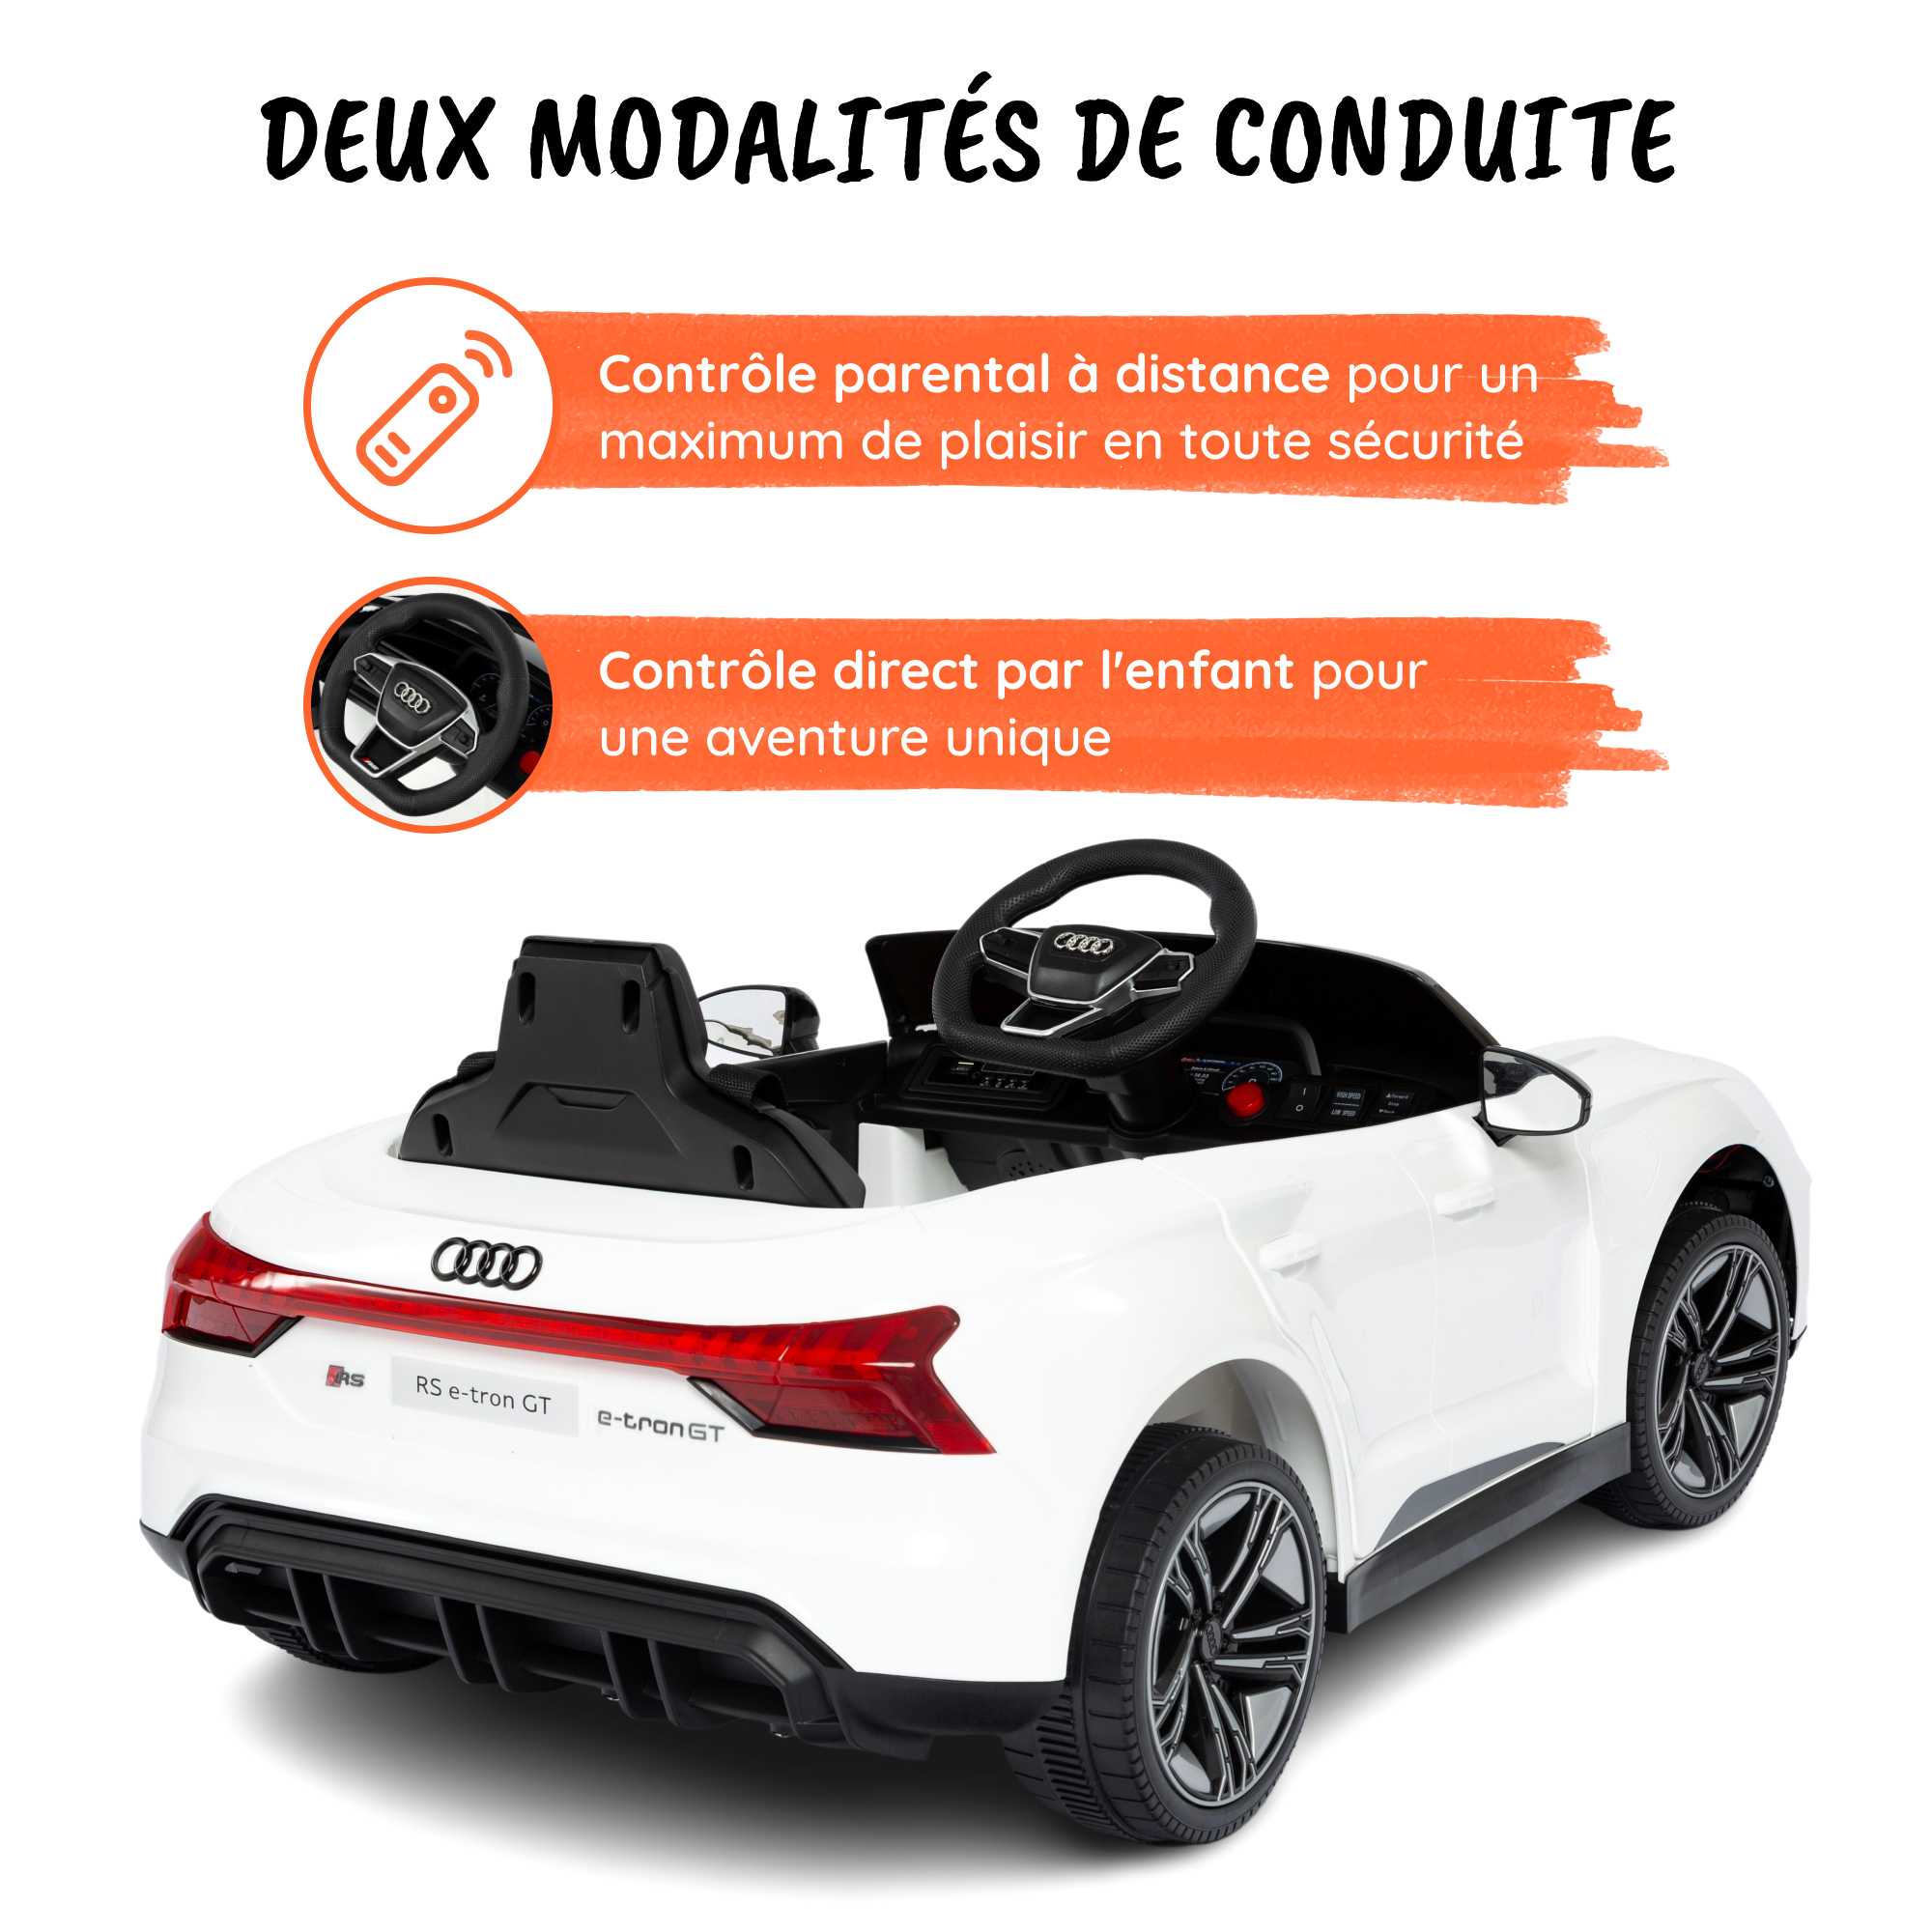 Audi RS eTron Blanc - deux modalites de conduite